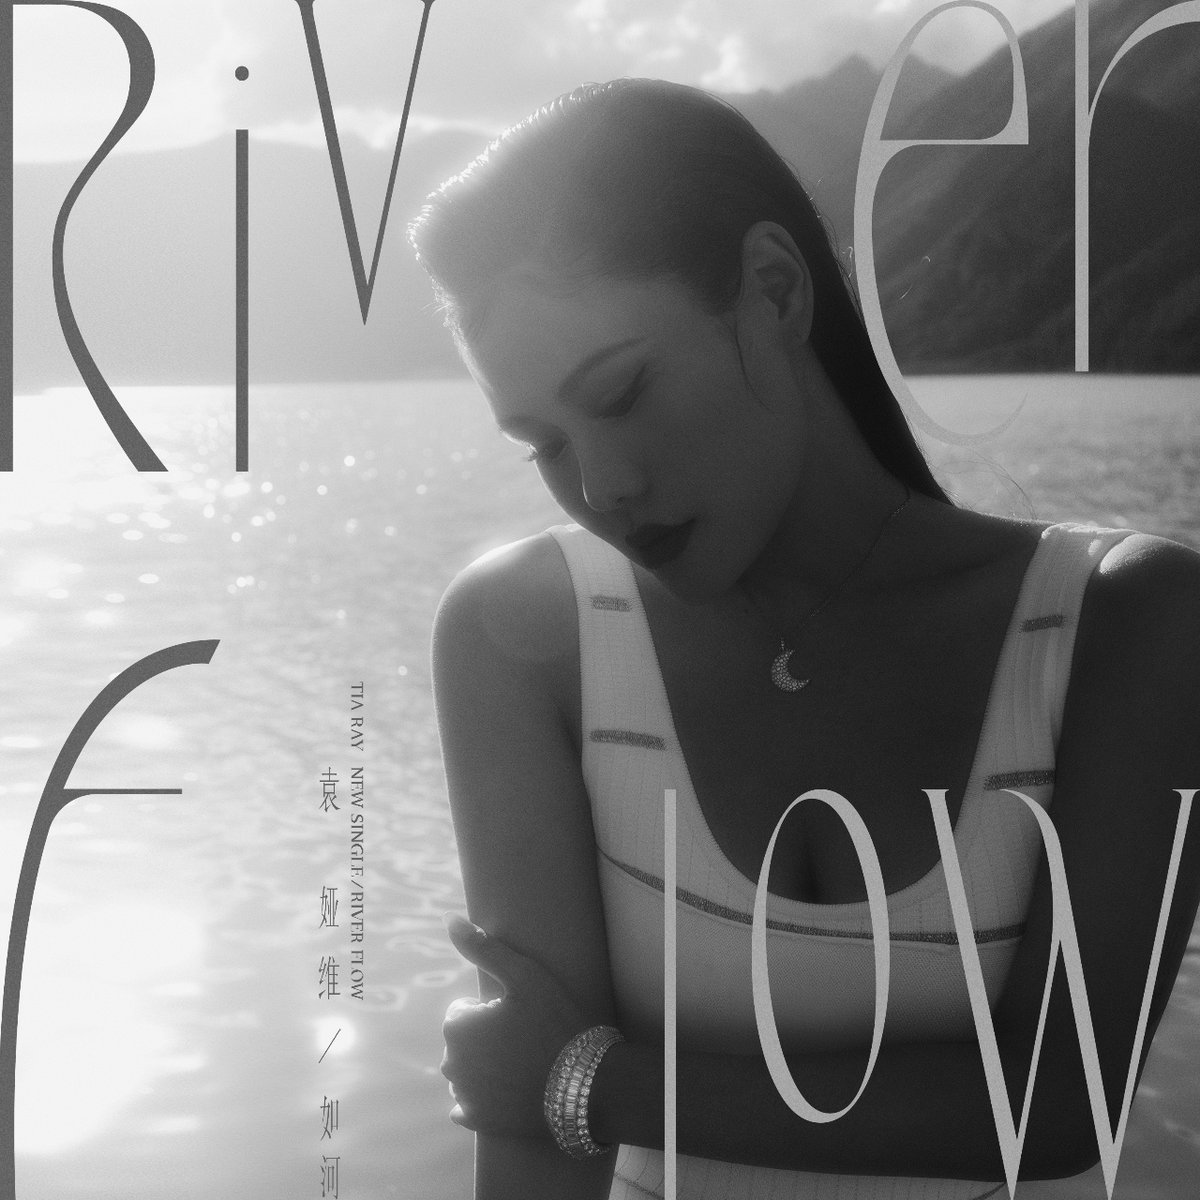 놀라운 음악성을 가진 가수 袁娅维TIA RAY의 새 싱글 앨범 <如河 (RIVER FLOW)> 한국을 포함 전세계 플랫폼에서 들어볼 수 있습니다🔊

#TIARAY #袁娅维 #如河 #RIVERFLOW  #cpop #nihaomusic

▶youtu.be/SluR9IhboXs